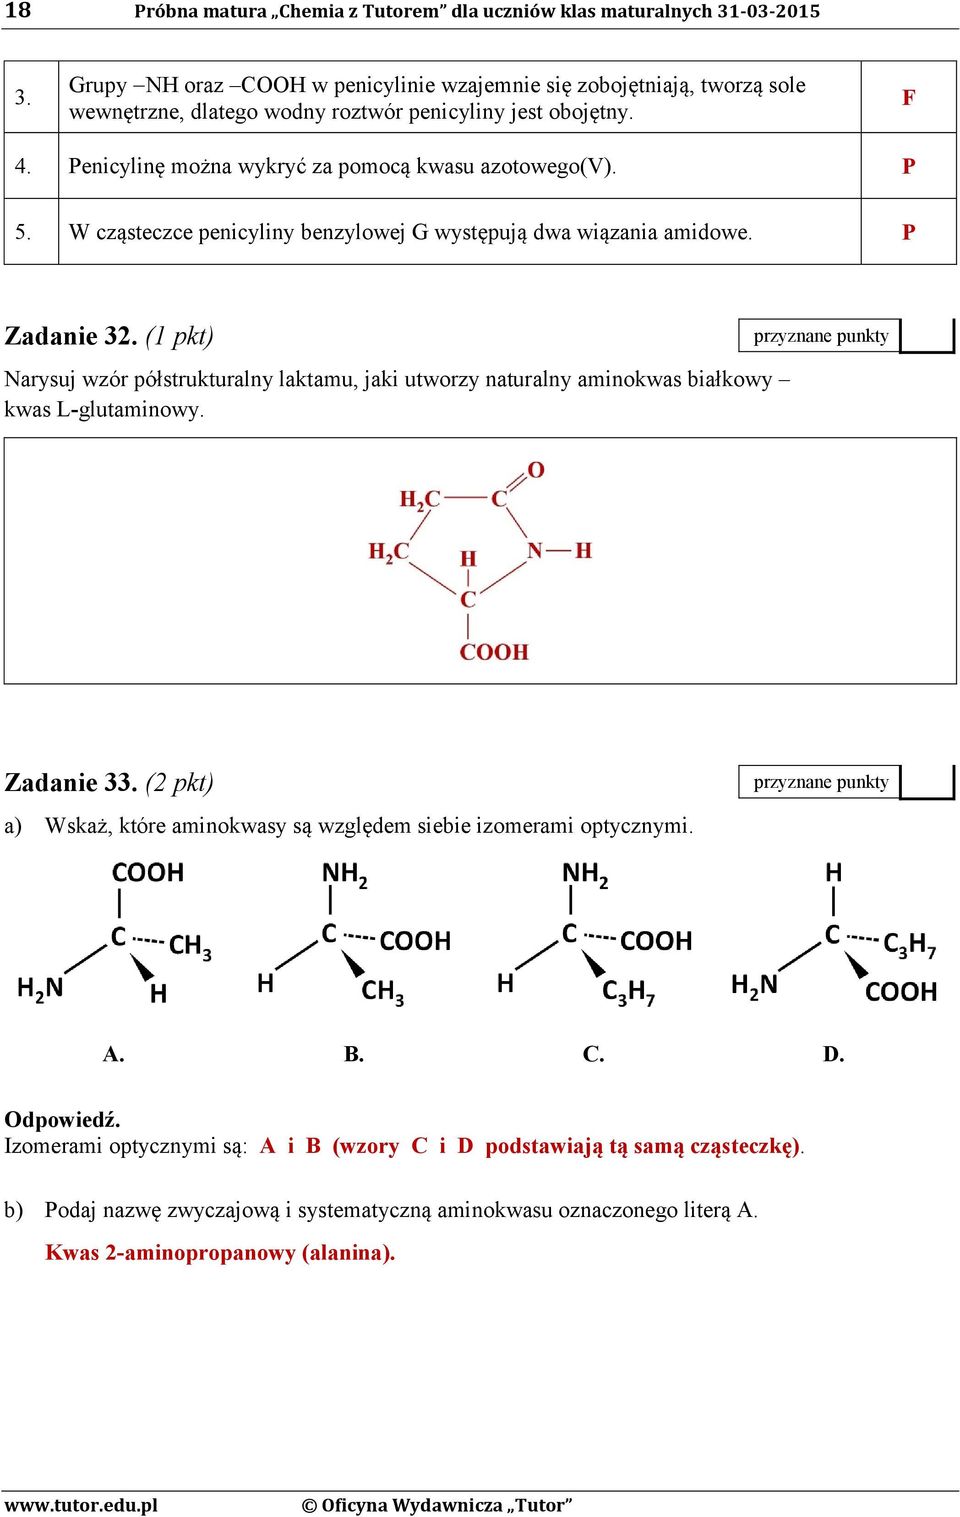 W cząsteczce penicyliny benzylowej G występują dwa wiązania amidowe. P Zadanie 32. (1 pkt) Narysuj wzór półstrukturalny laktamu, jaki utworzy naturalny aminokwas białkowy kwas L-glutaminowy.